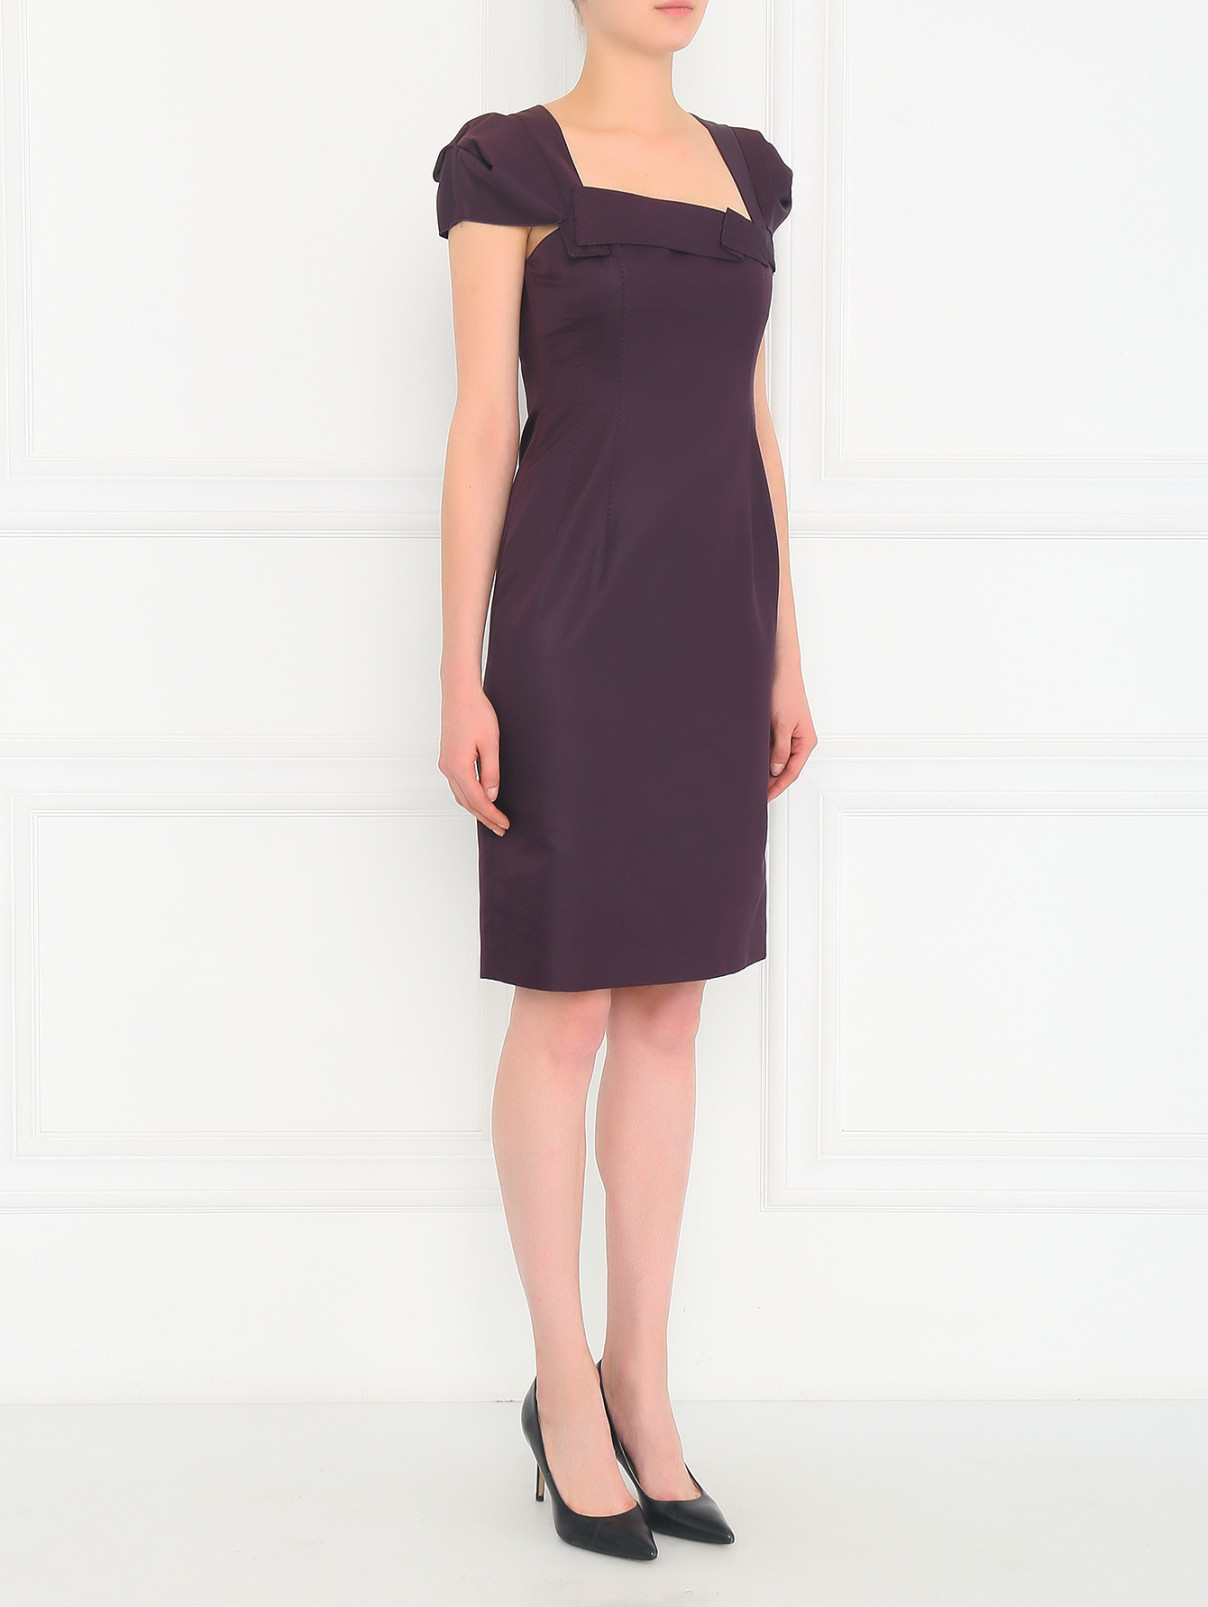 Платье-футляр из хлопка и шелка 6267  –  Модель Общий вид  – Цвет:  Фиолетовый